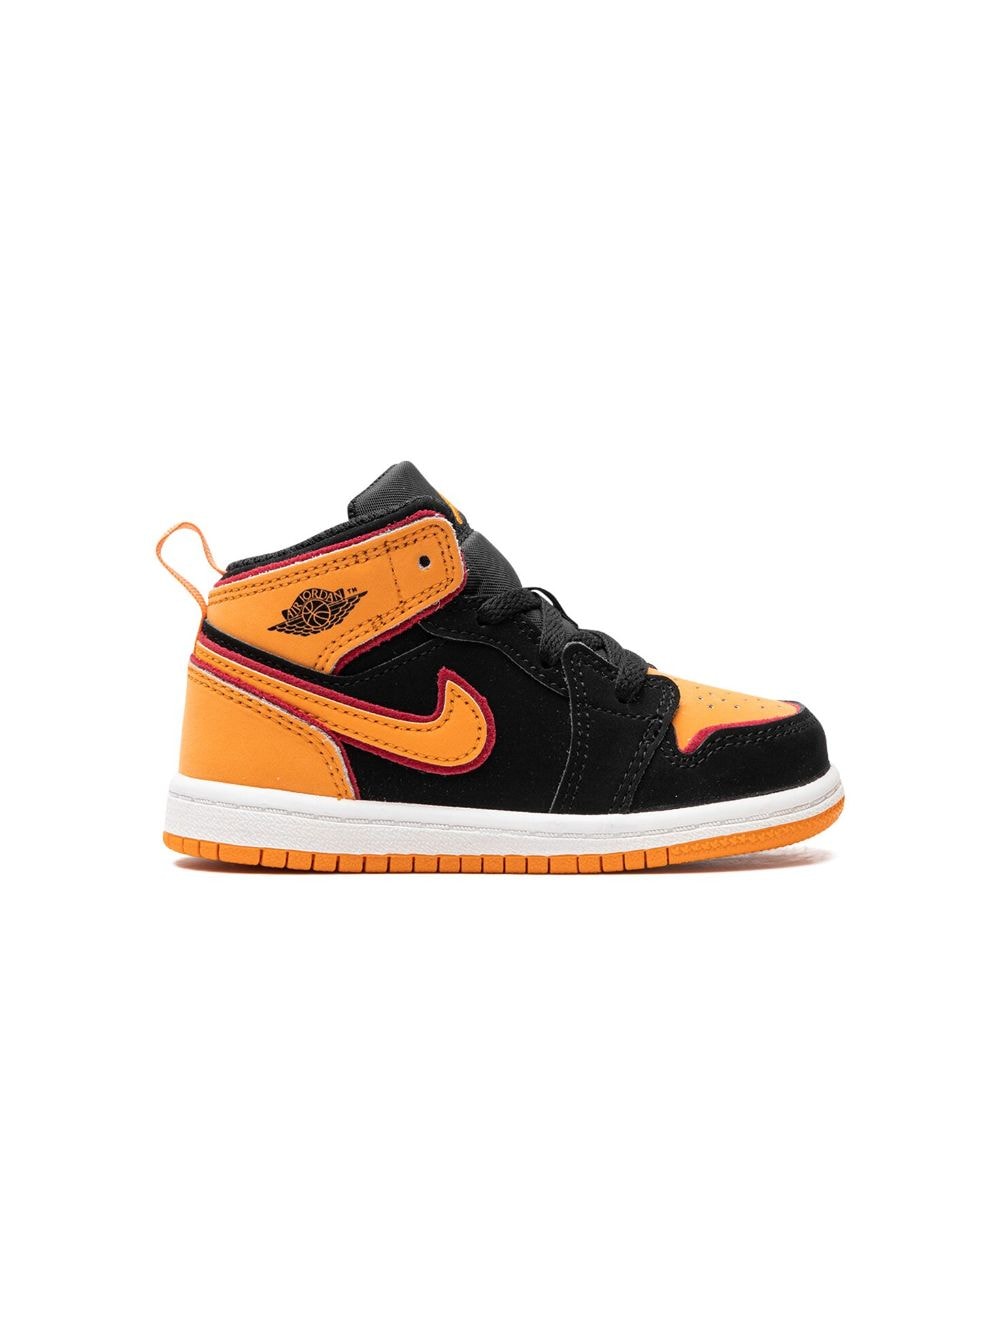 Jordan Babies' Air  1 Mid "vivid Orange" Sneakers